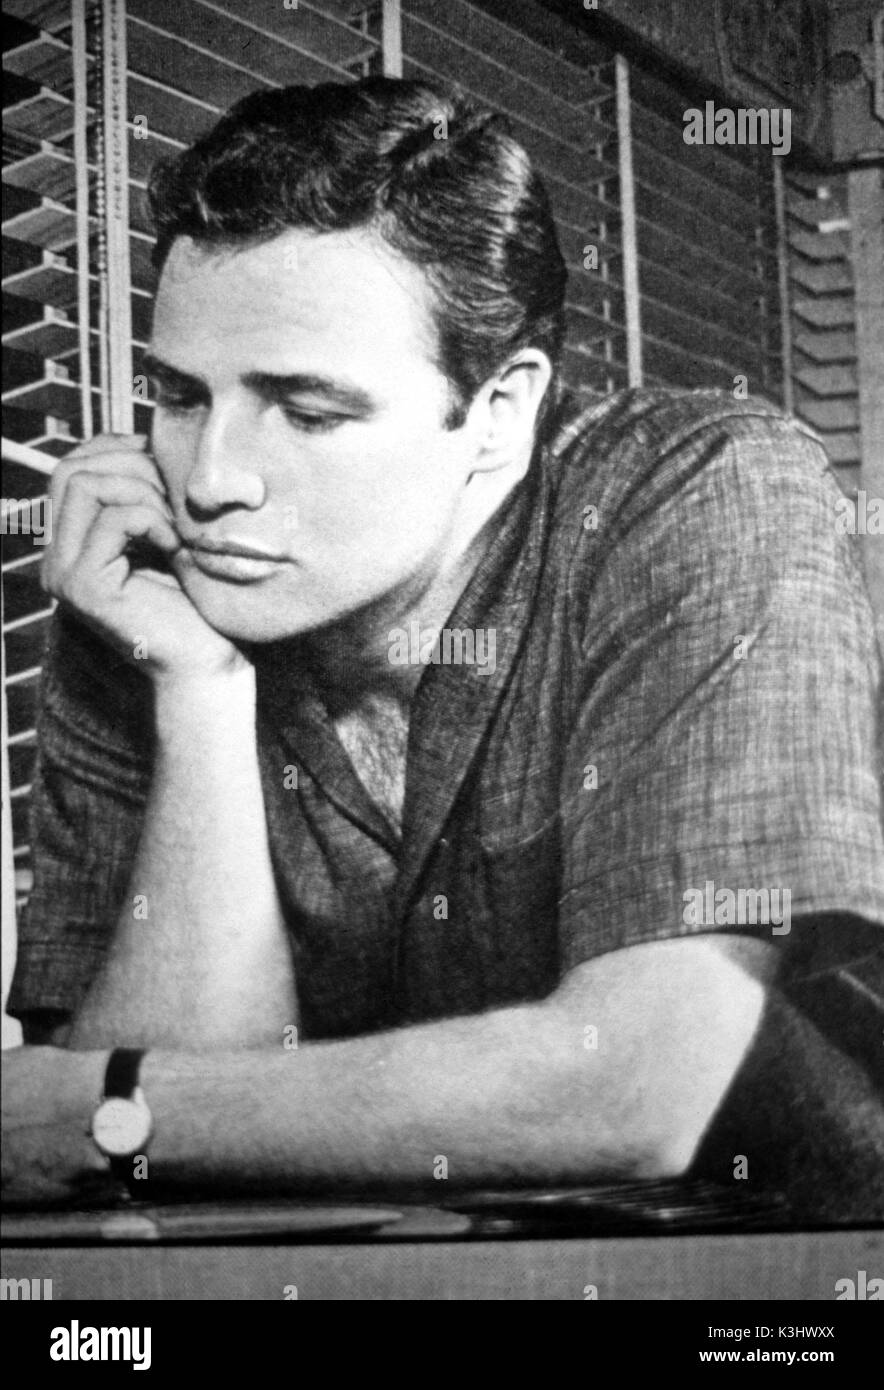 MARLON Brando el actor norteamericano Foto de stock